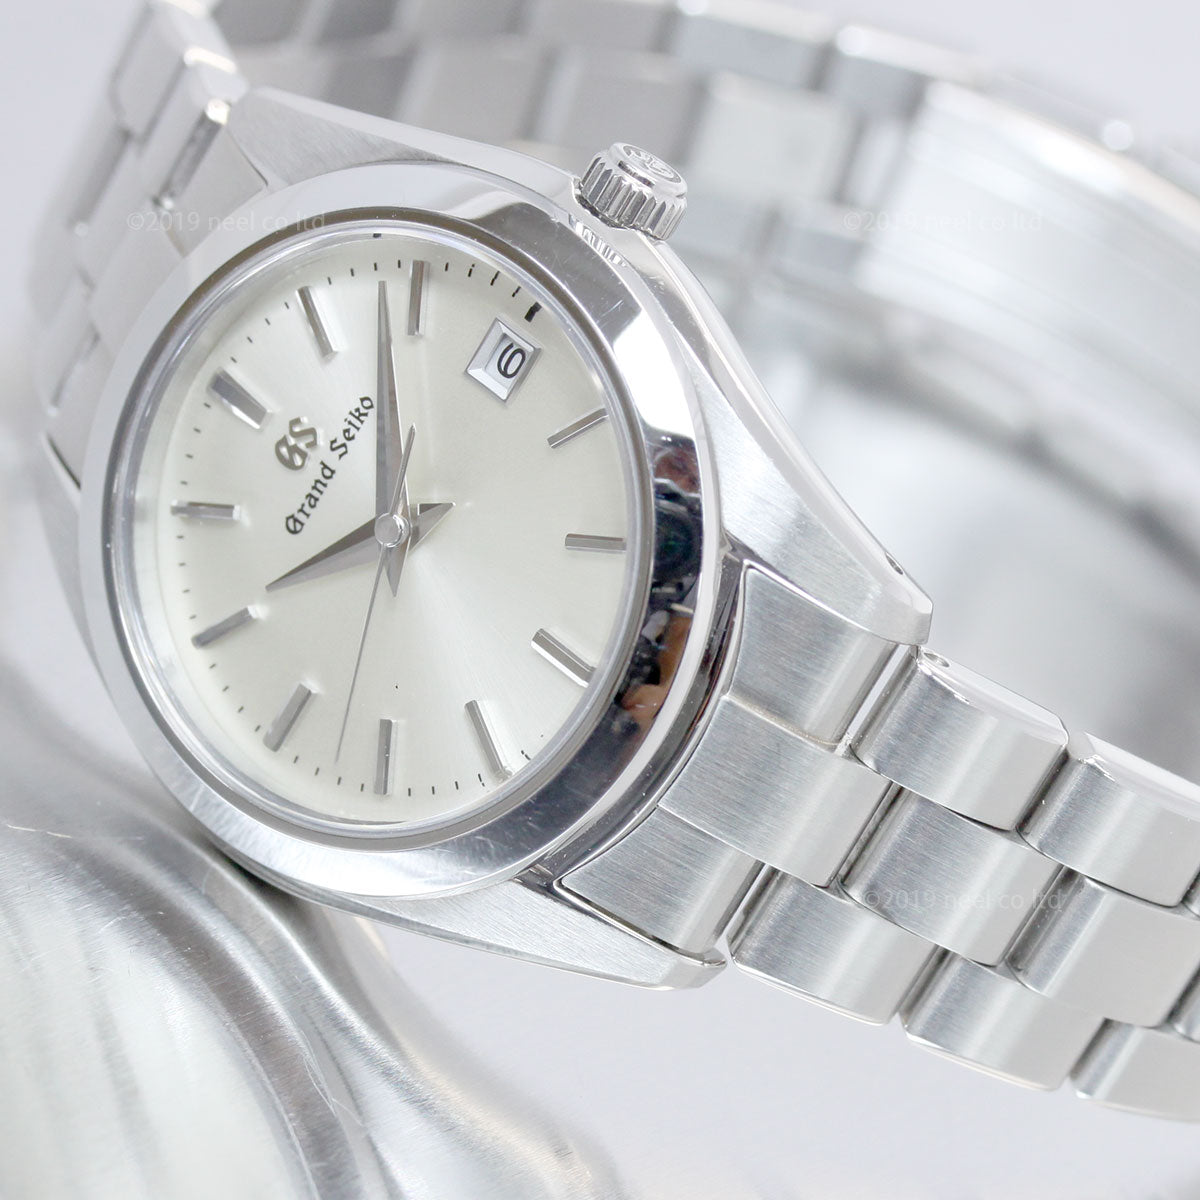 グランドセイコー GRAND SEIKO 腕時計 メンズ レディース ペアモデル Heritage Collection SBGX263 STGF265